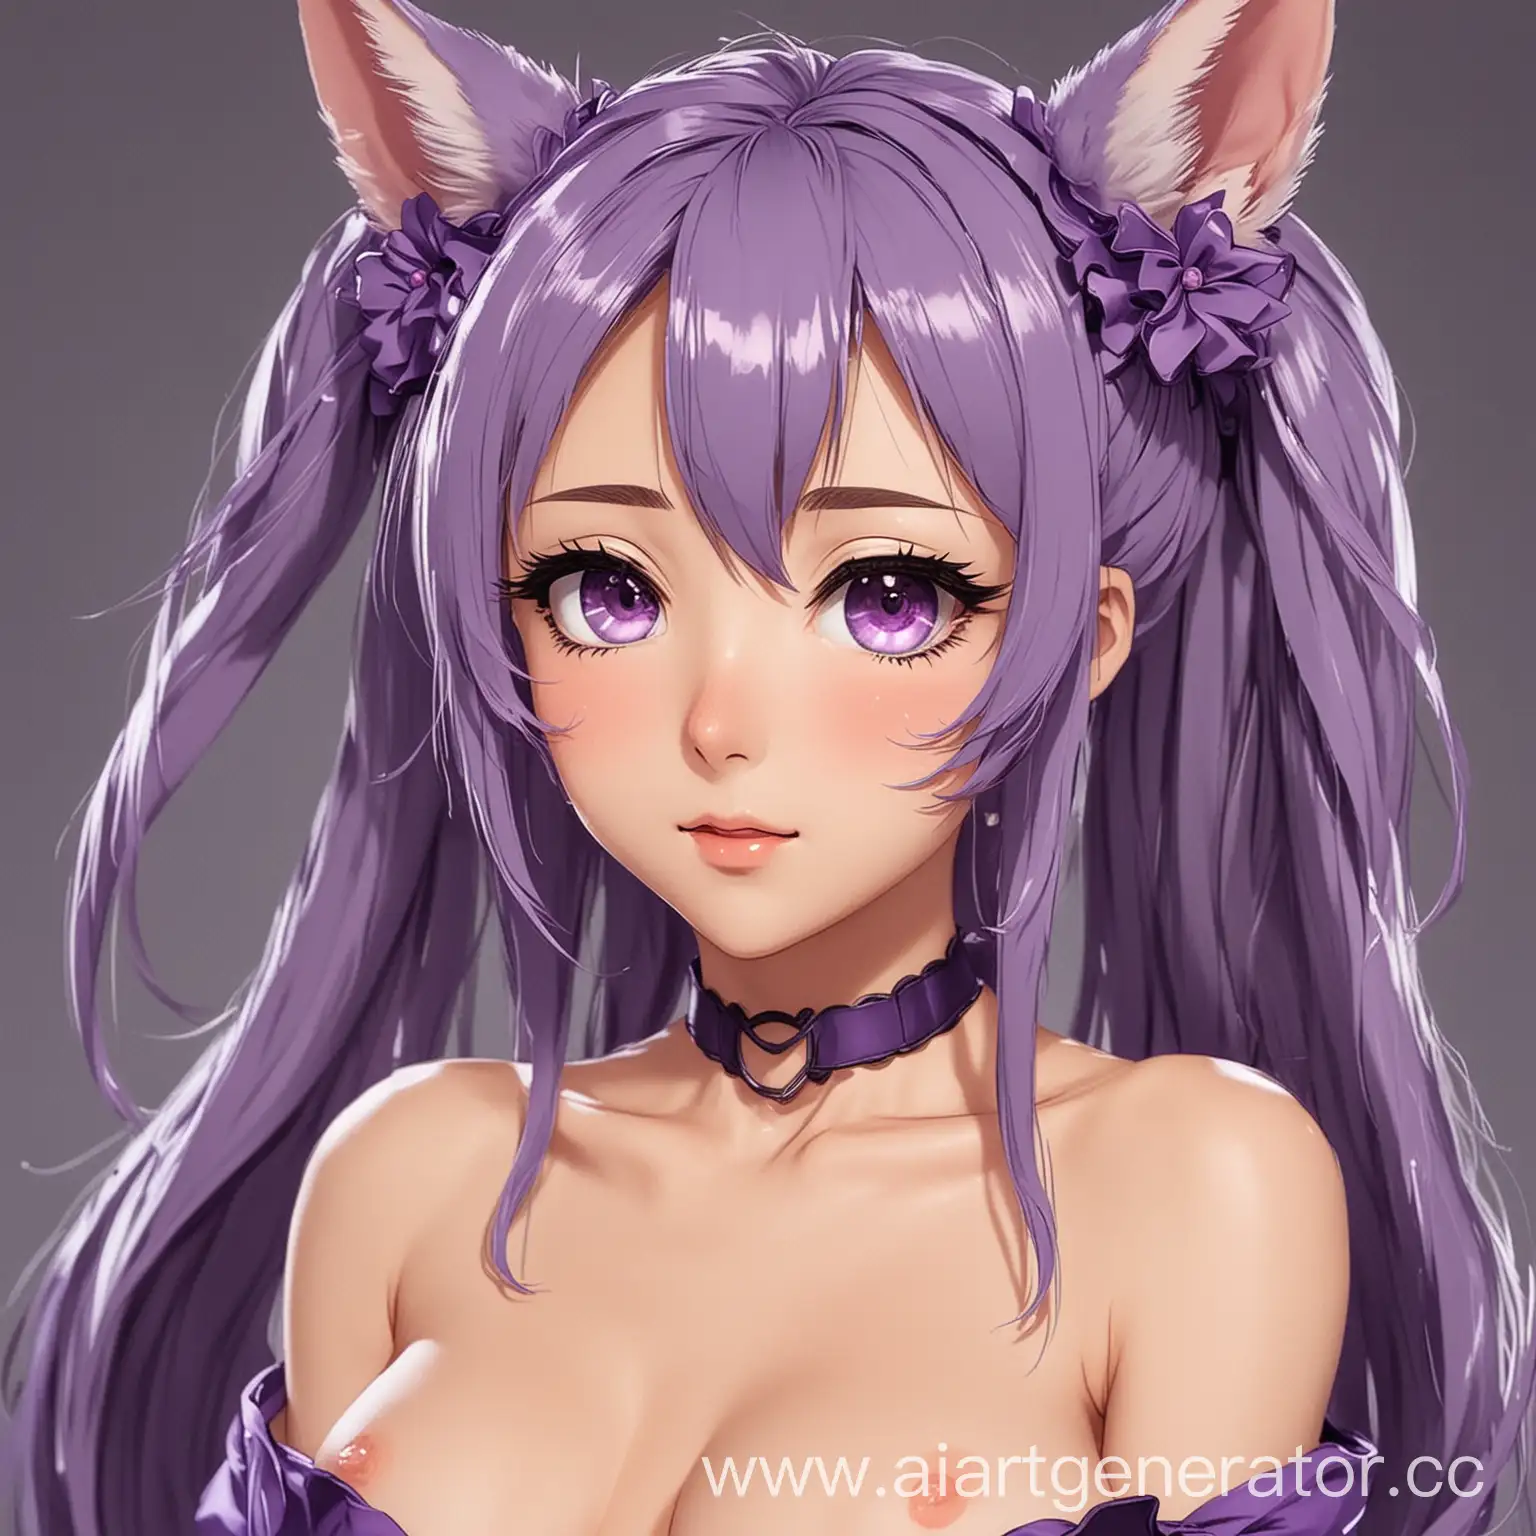 Purple-Anime-Hentai-Tianka-with-Ears-Sensual-Fantasy-Artwork